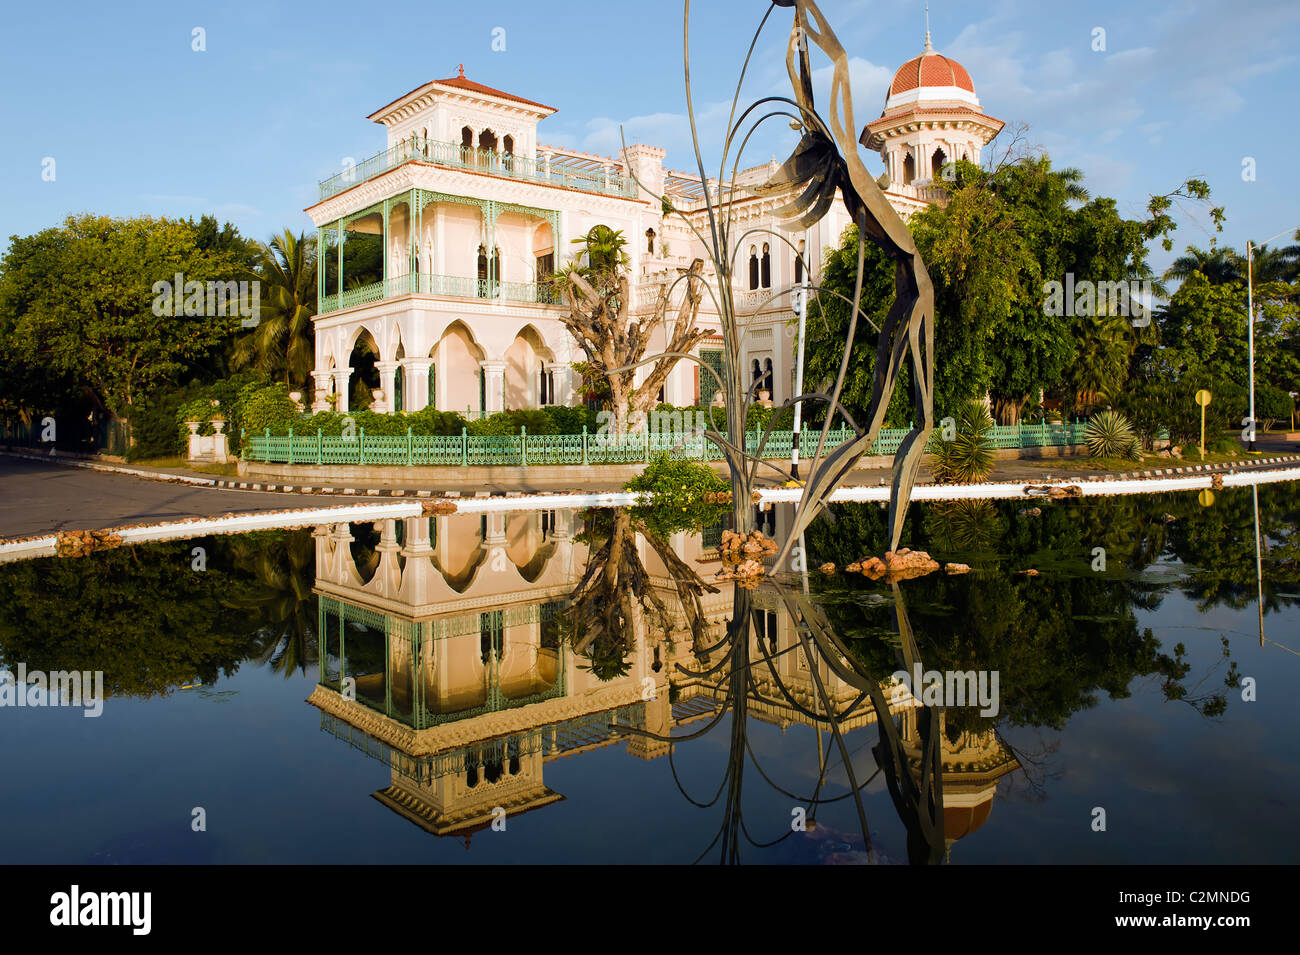 Moorish style Palacio de Valle, Cienfuegos, Cuba Stock Photo